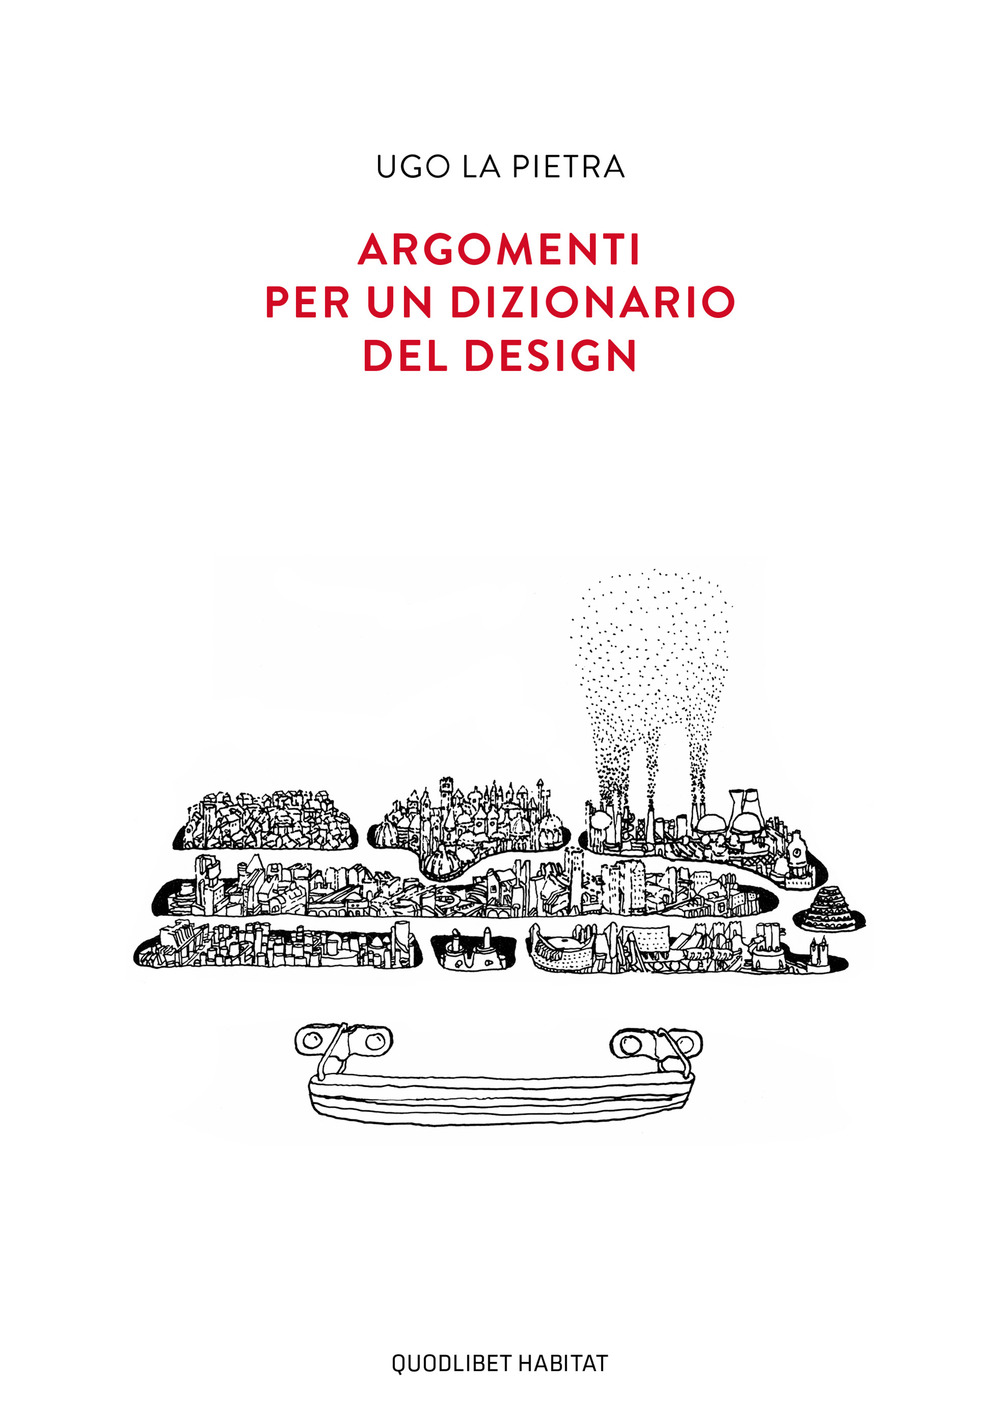 Libri La Pietra Ugo - Argomenti Per Un Dizionario Del Design NUOVO SIGILLATO, EDIZIONE DEL 26/09/2019 SUBITO DISPONIBILE